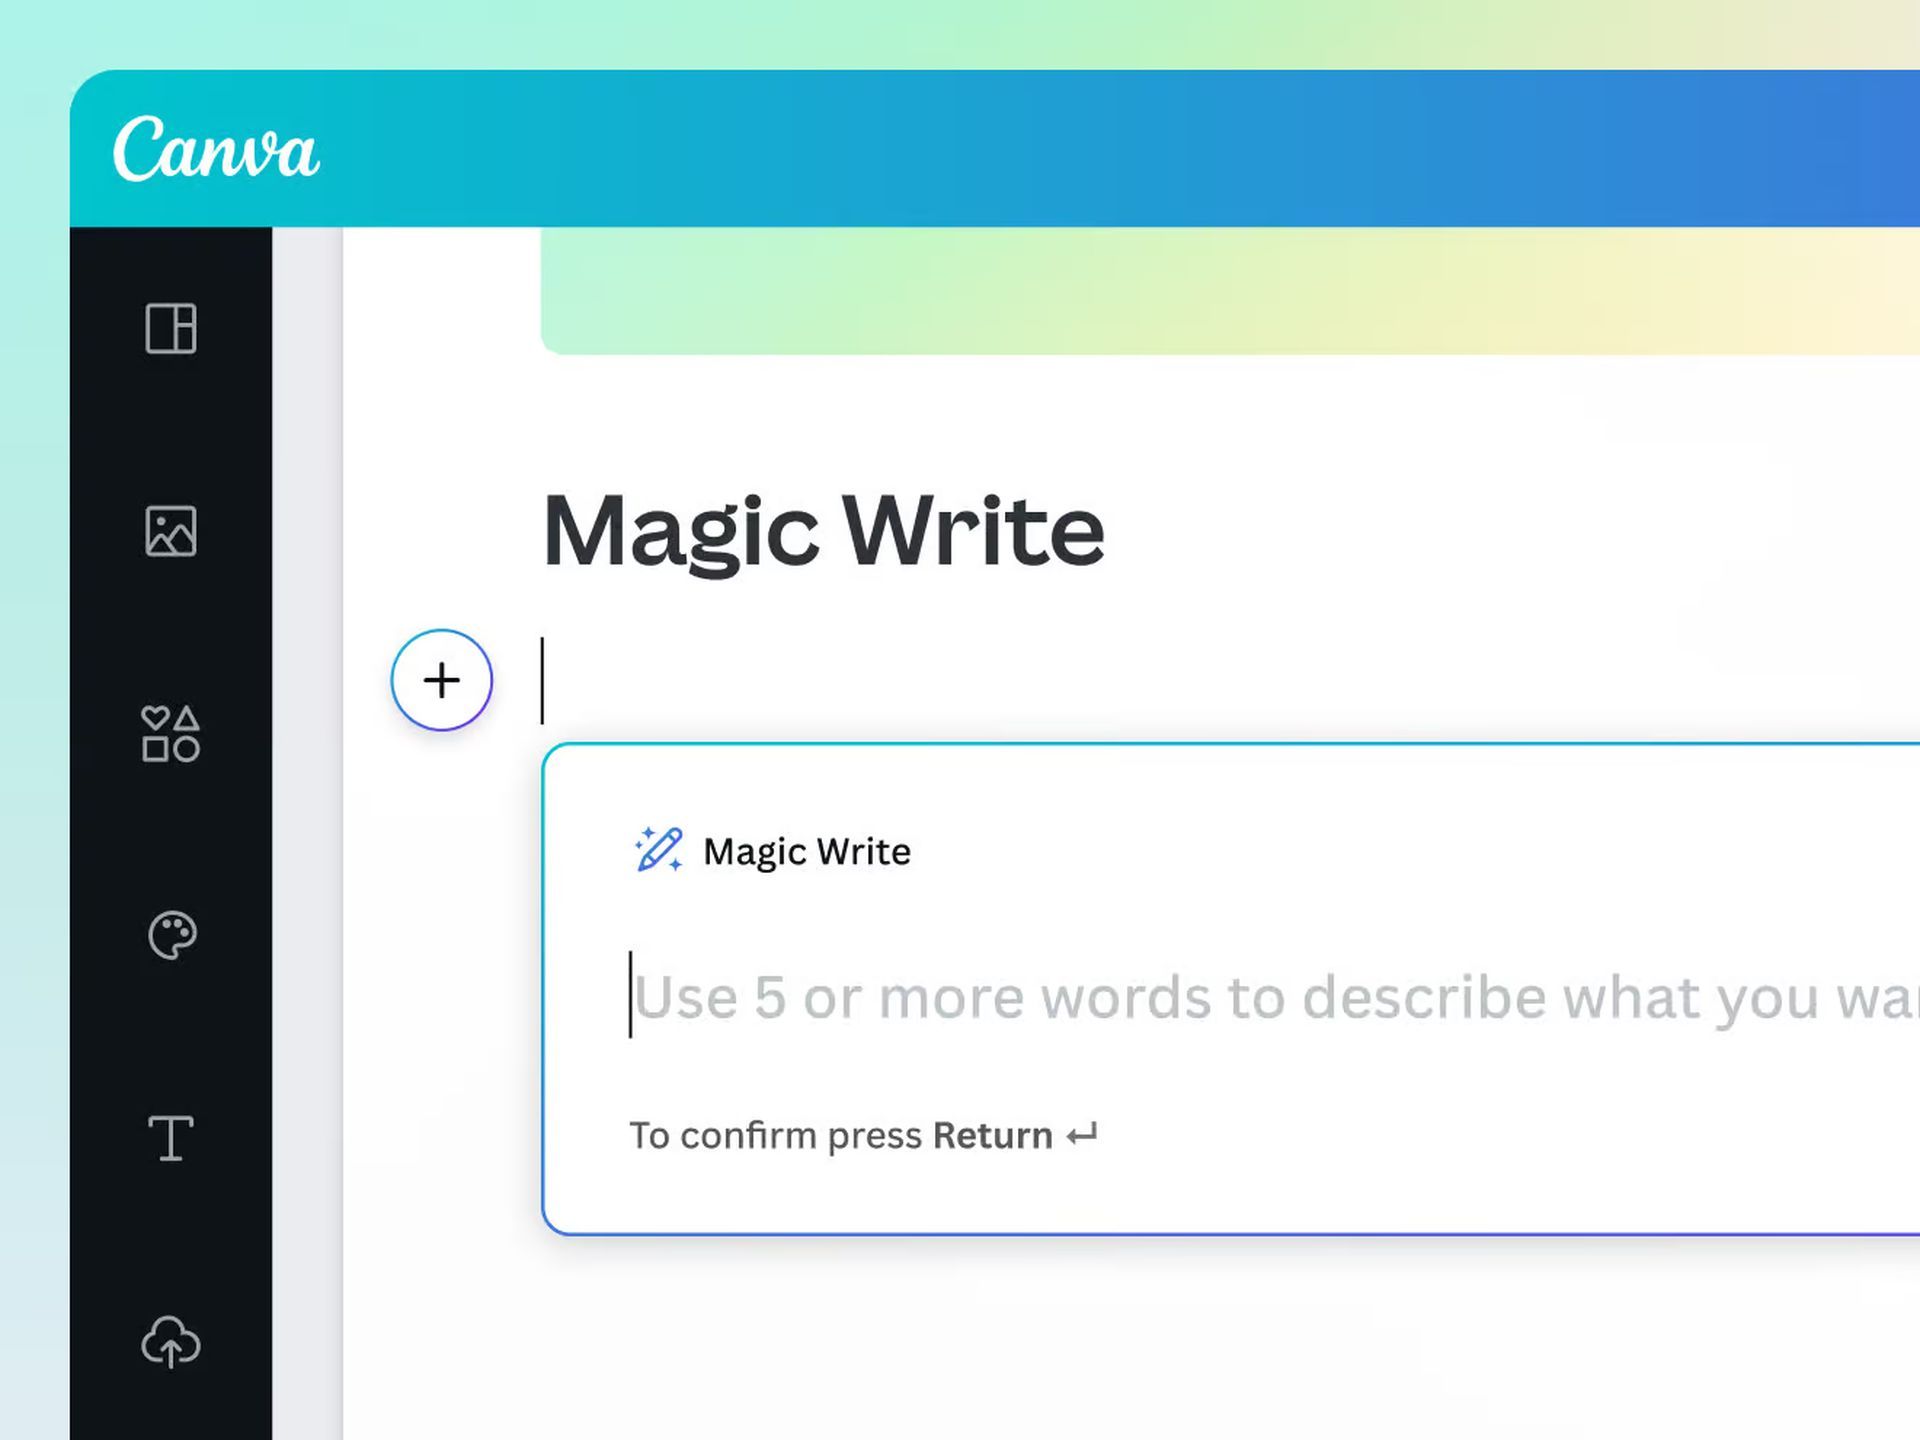 Jak korzystać z programu Canva Magic Write